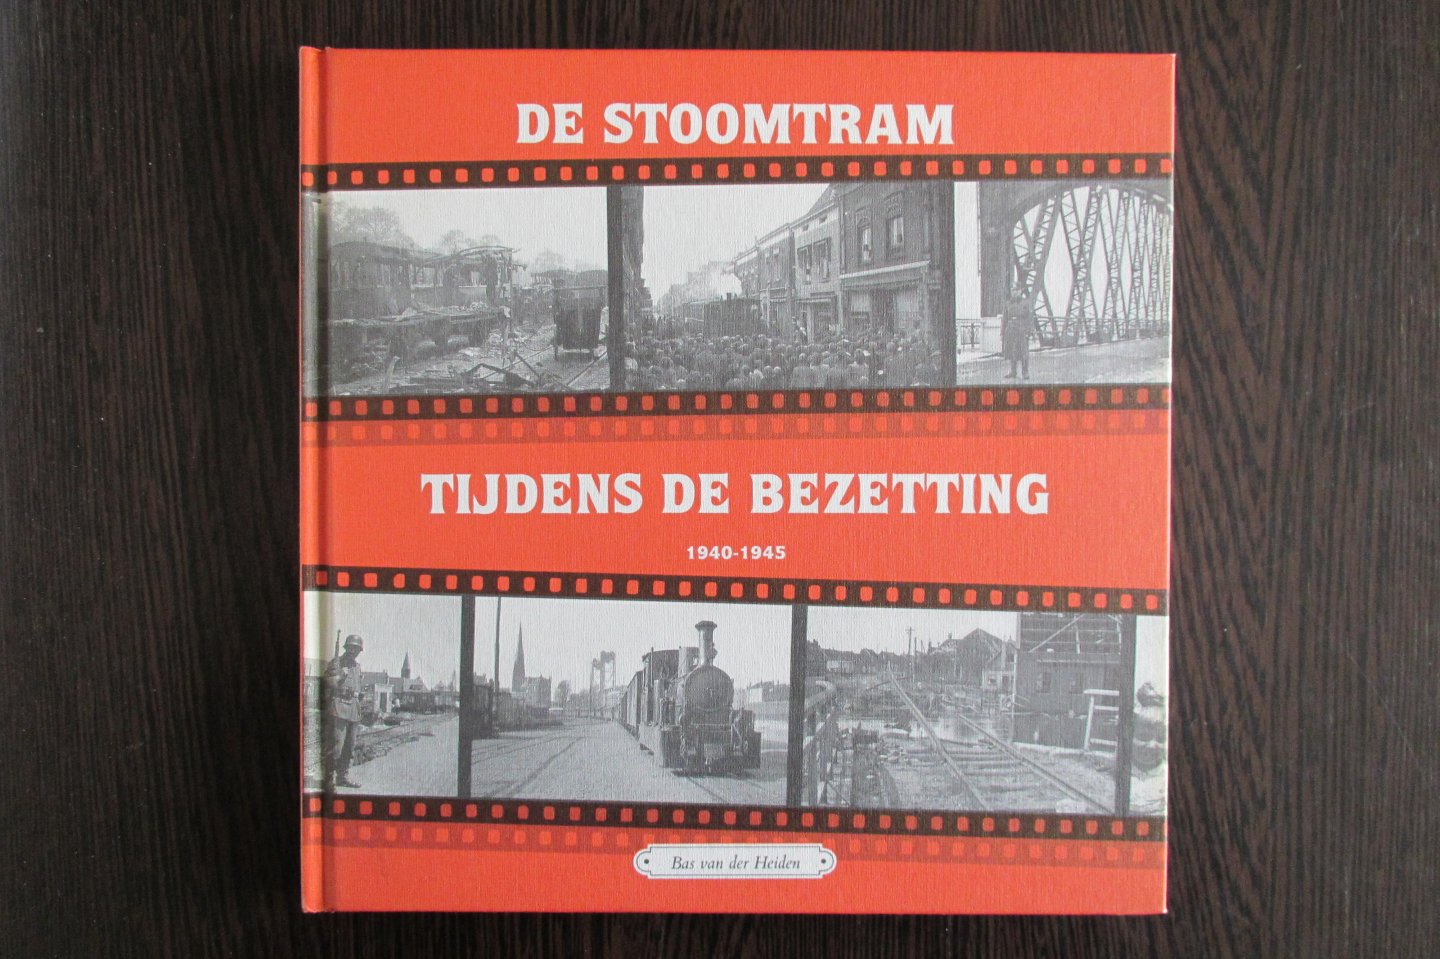 Heiden, B. van der - De stoomtram tijdens de bezetting 1940-1945  deel 10 - Rotterdam